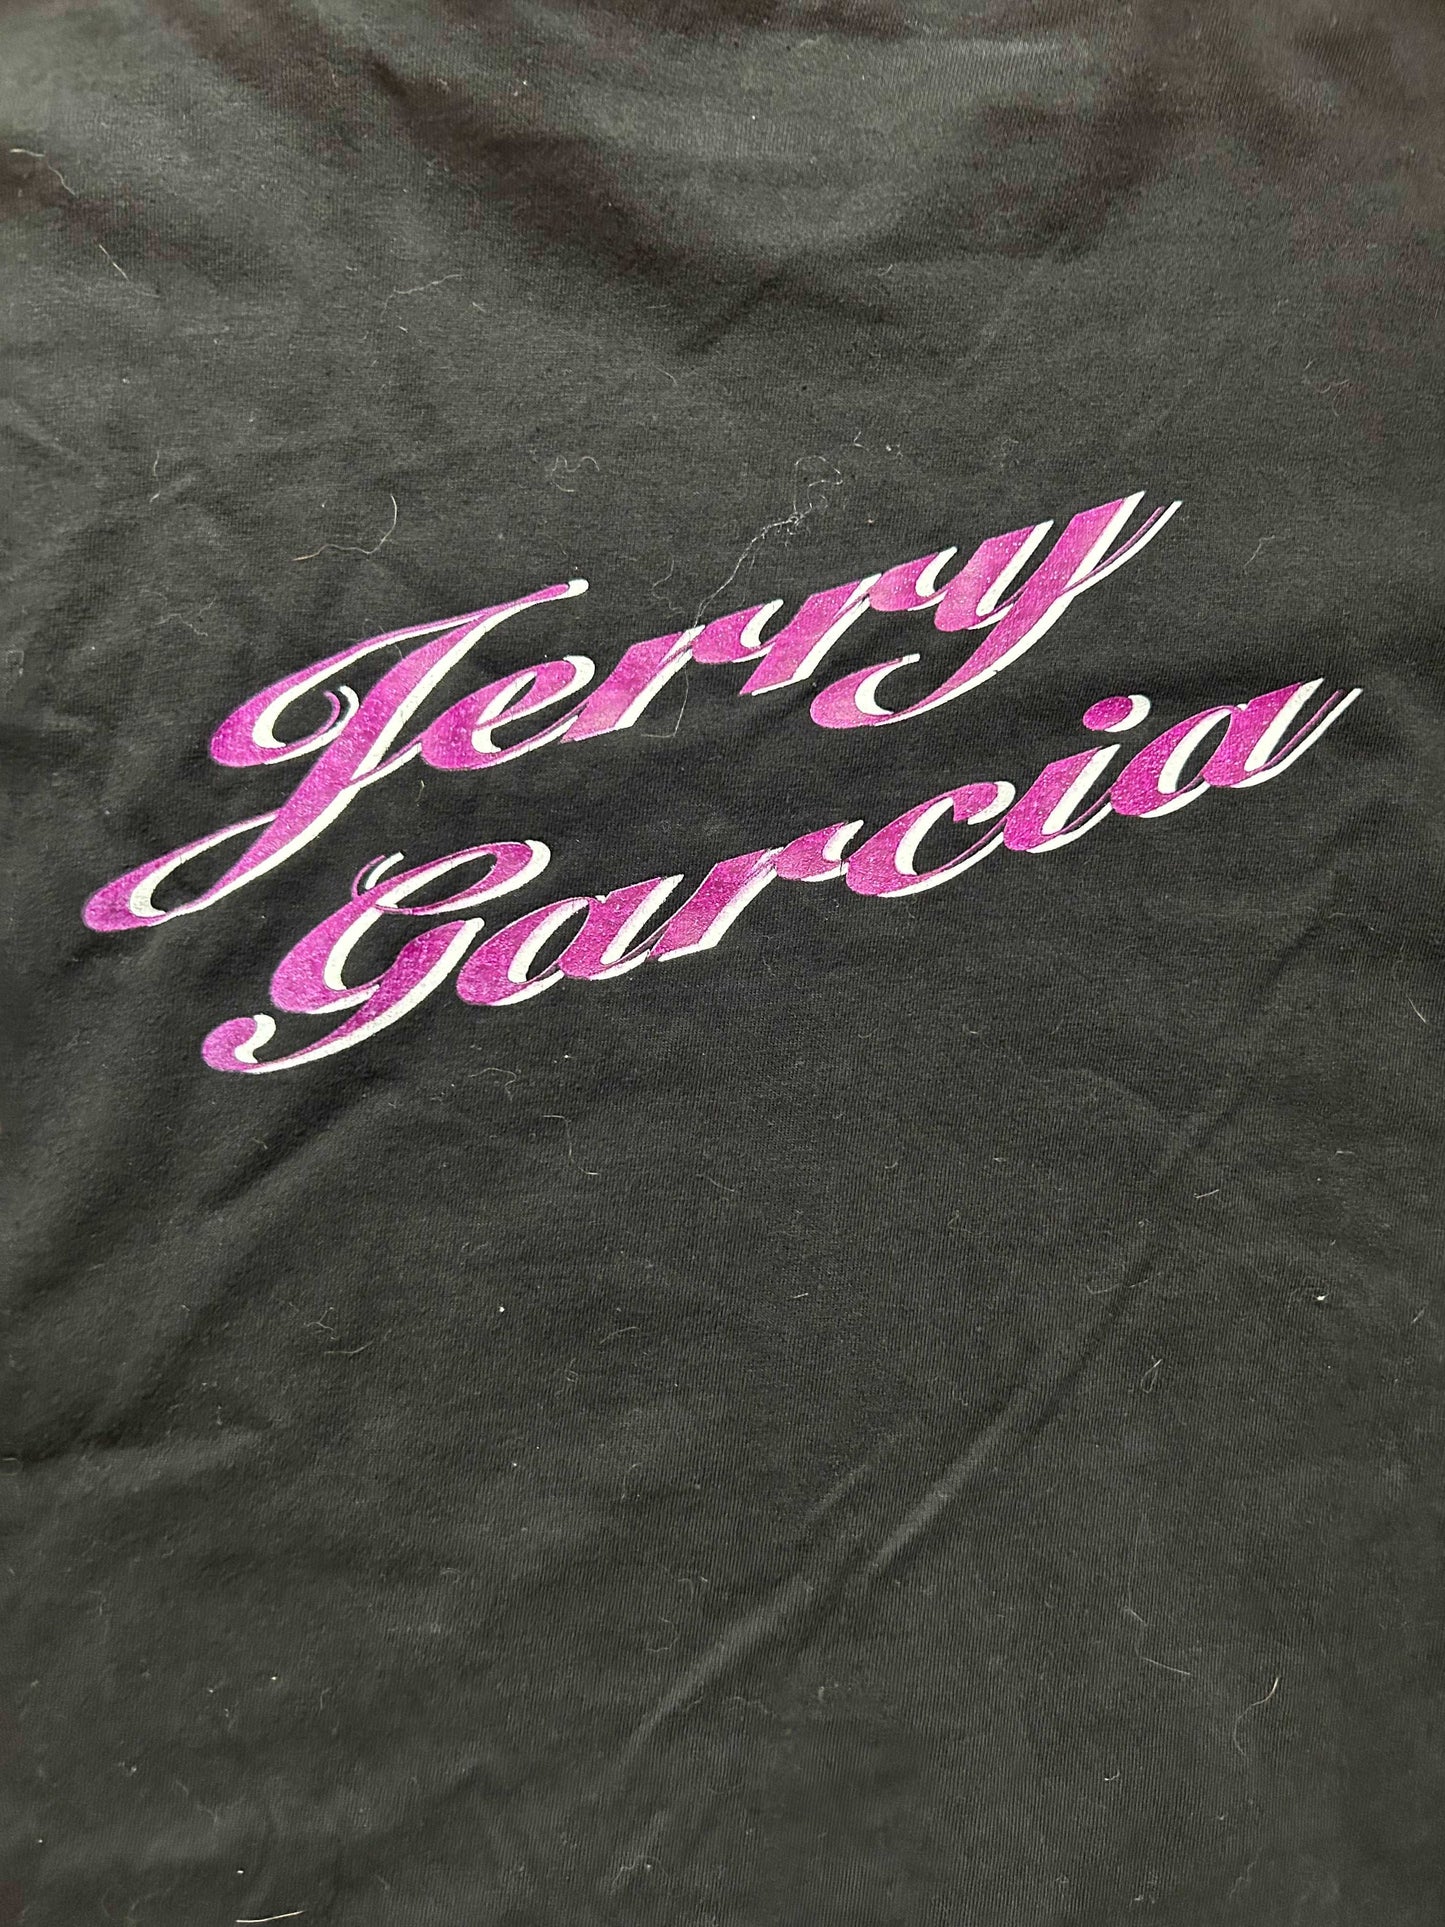 1993 Jerry Garcia Tee Size - XL